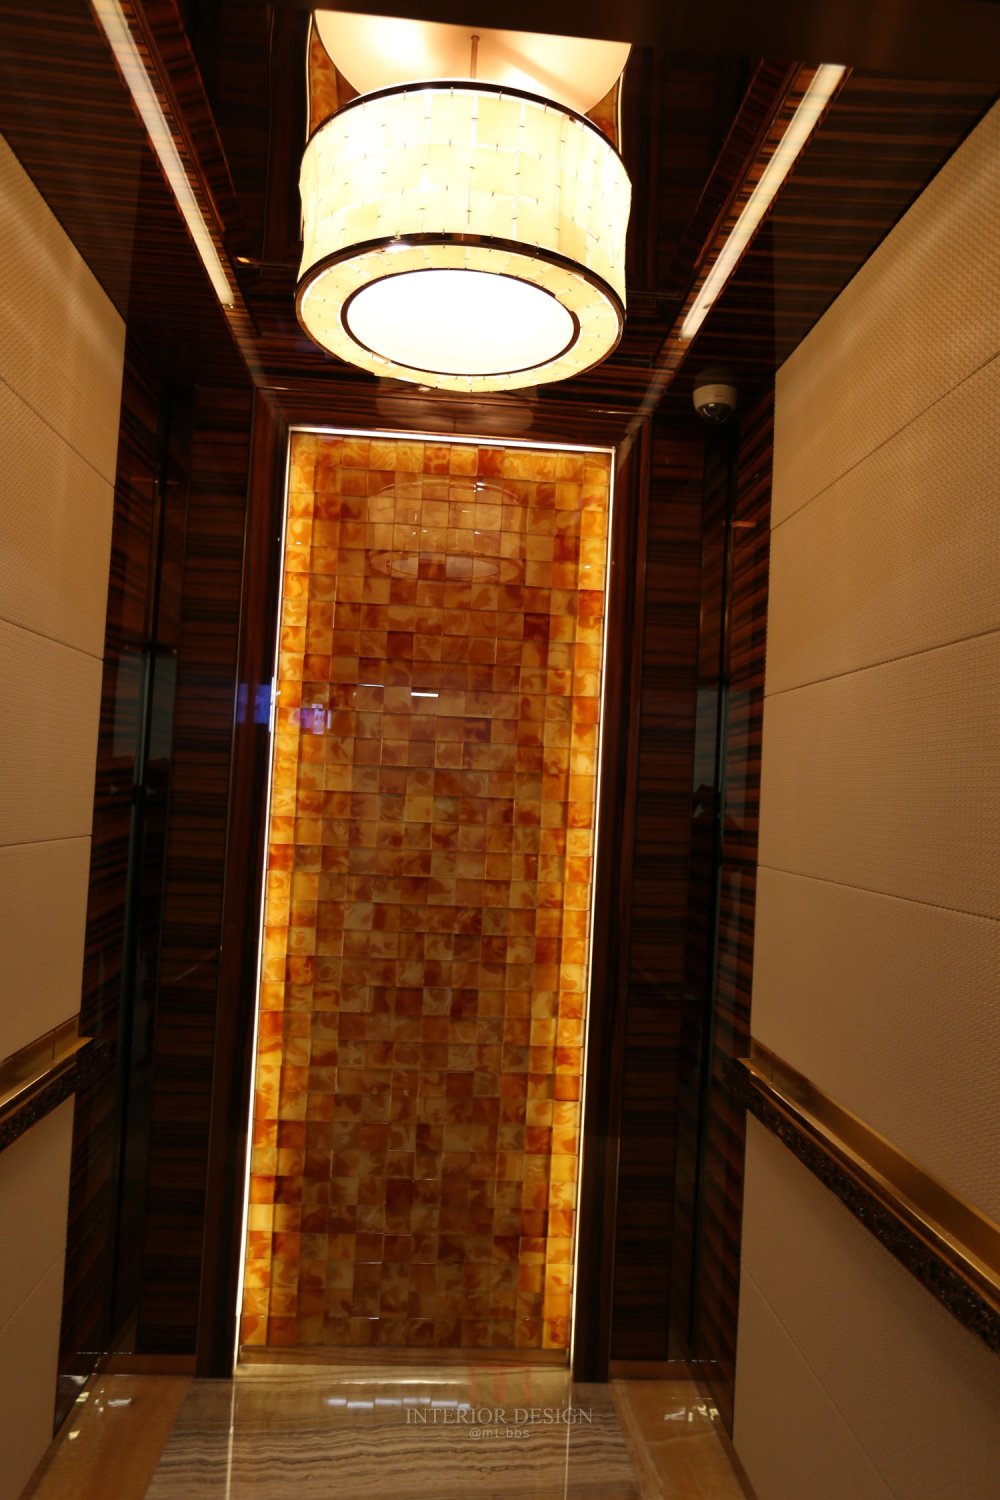 成都丽思卡尔顿酒店The Ritz-Carlton Chengdu(欢迎更新,高分奖励)_IMG_6058.jpg